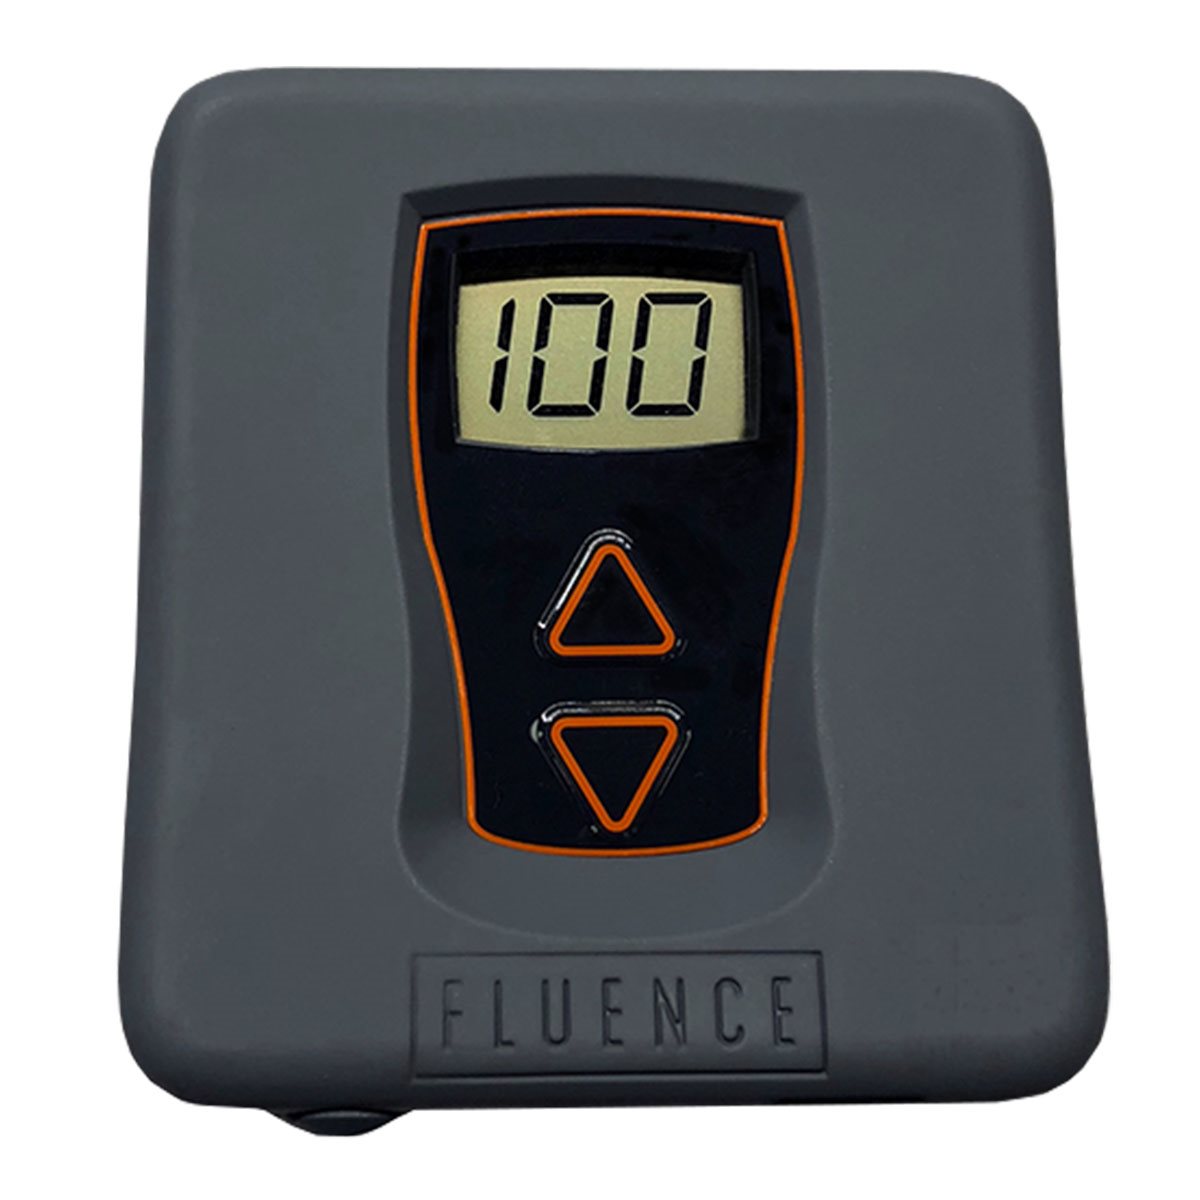 Product Image:Fluence Bioengineering Dimmer 120V